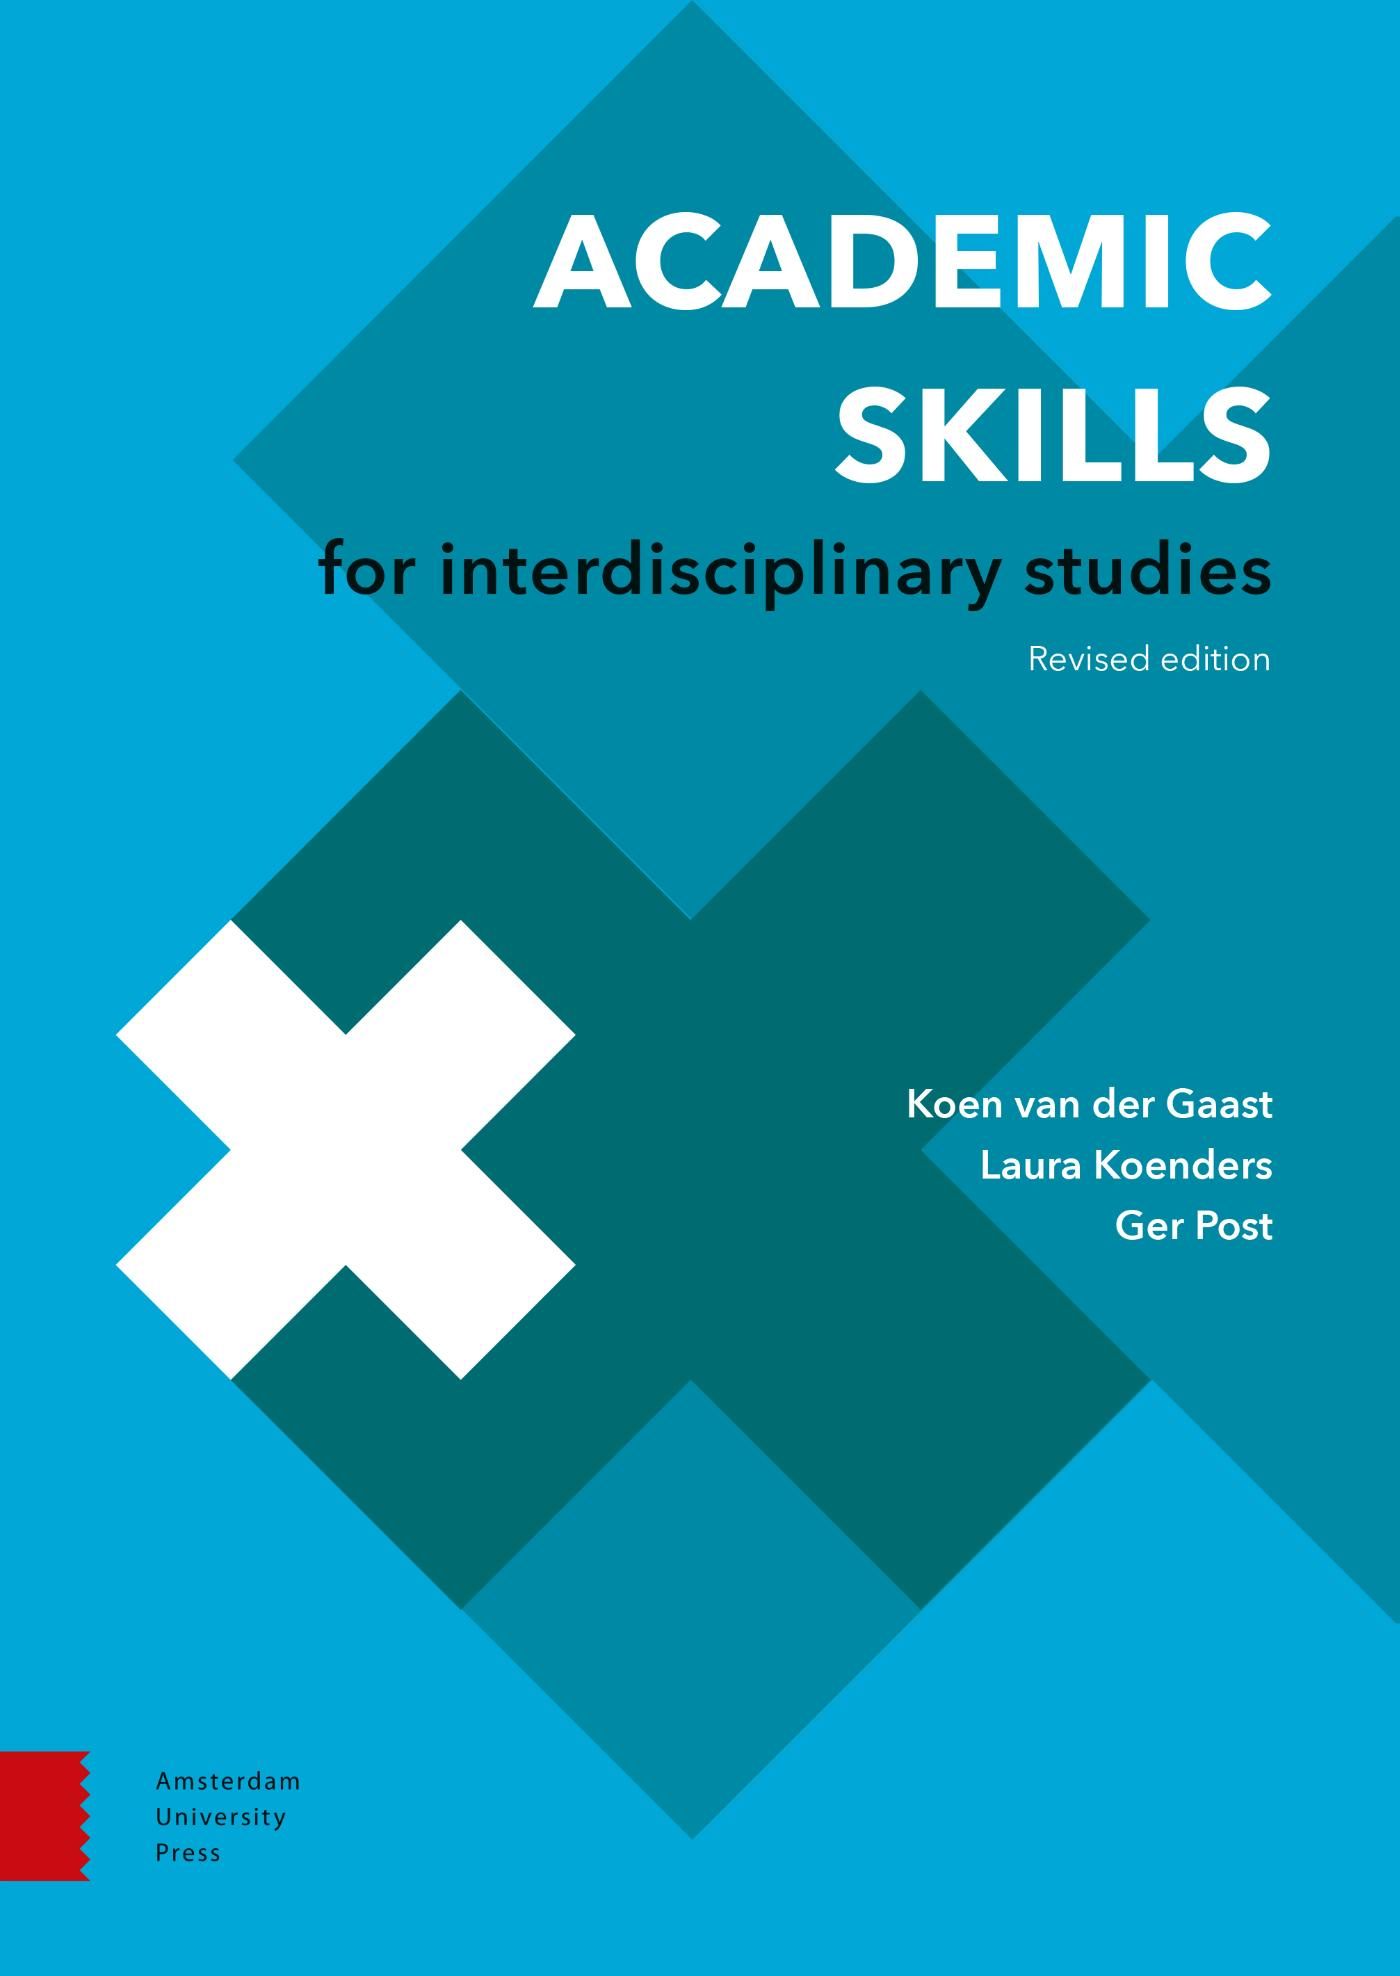 interdisciplinary studies